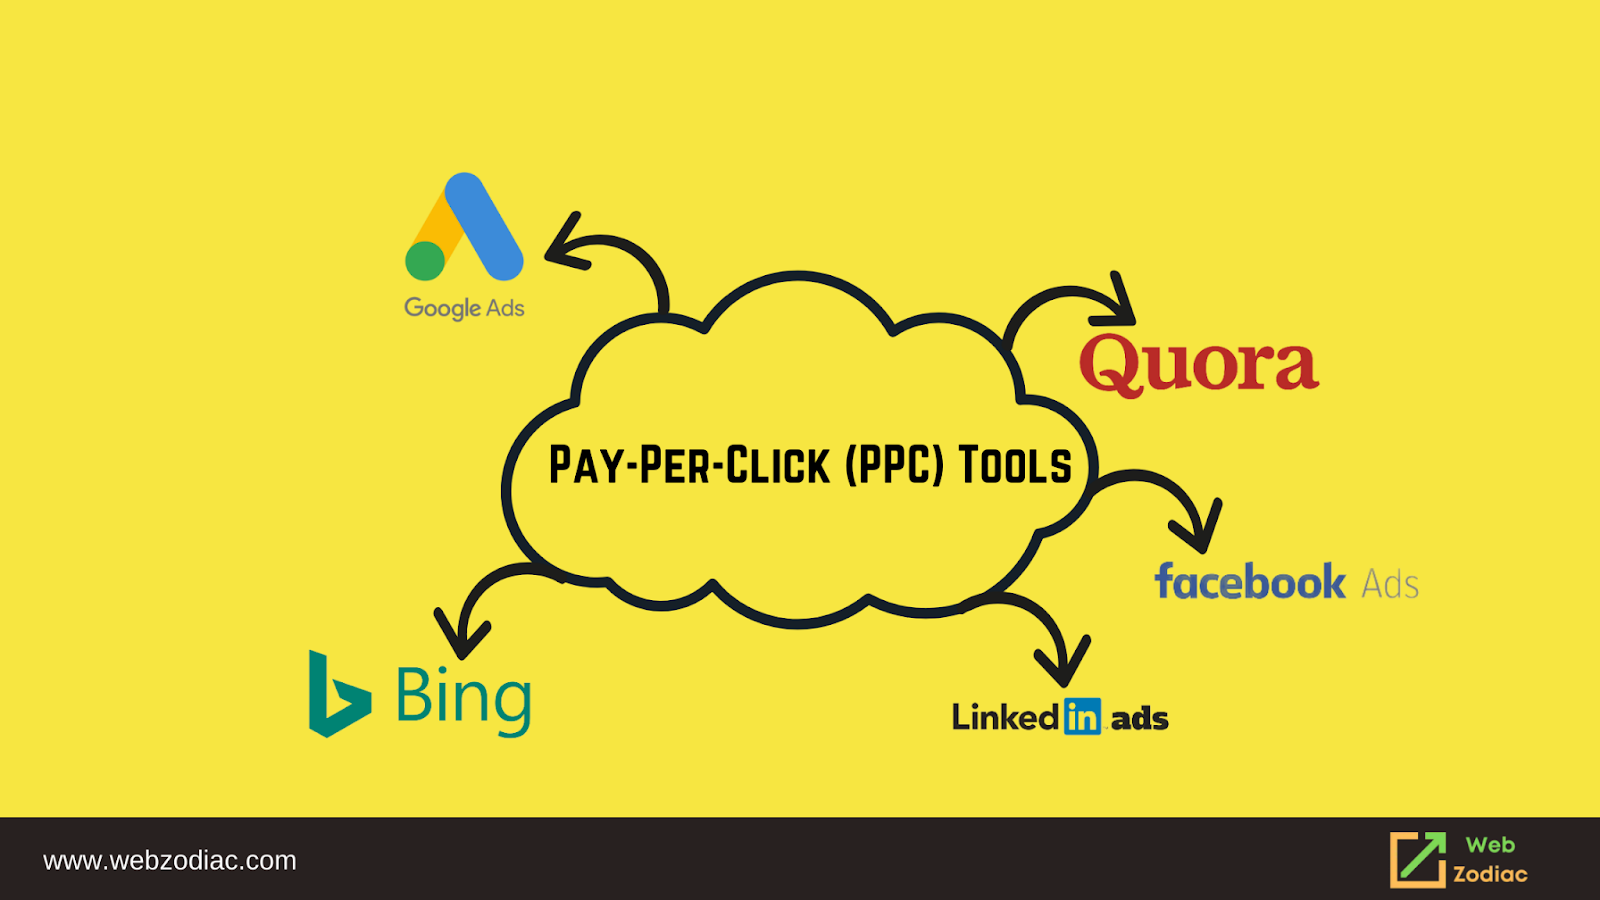 Pay-Per-Click (PPC) Tools Image